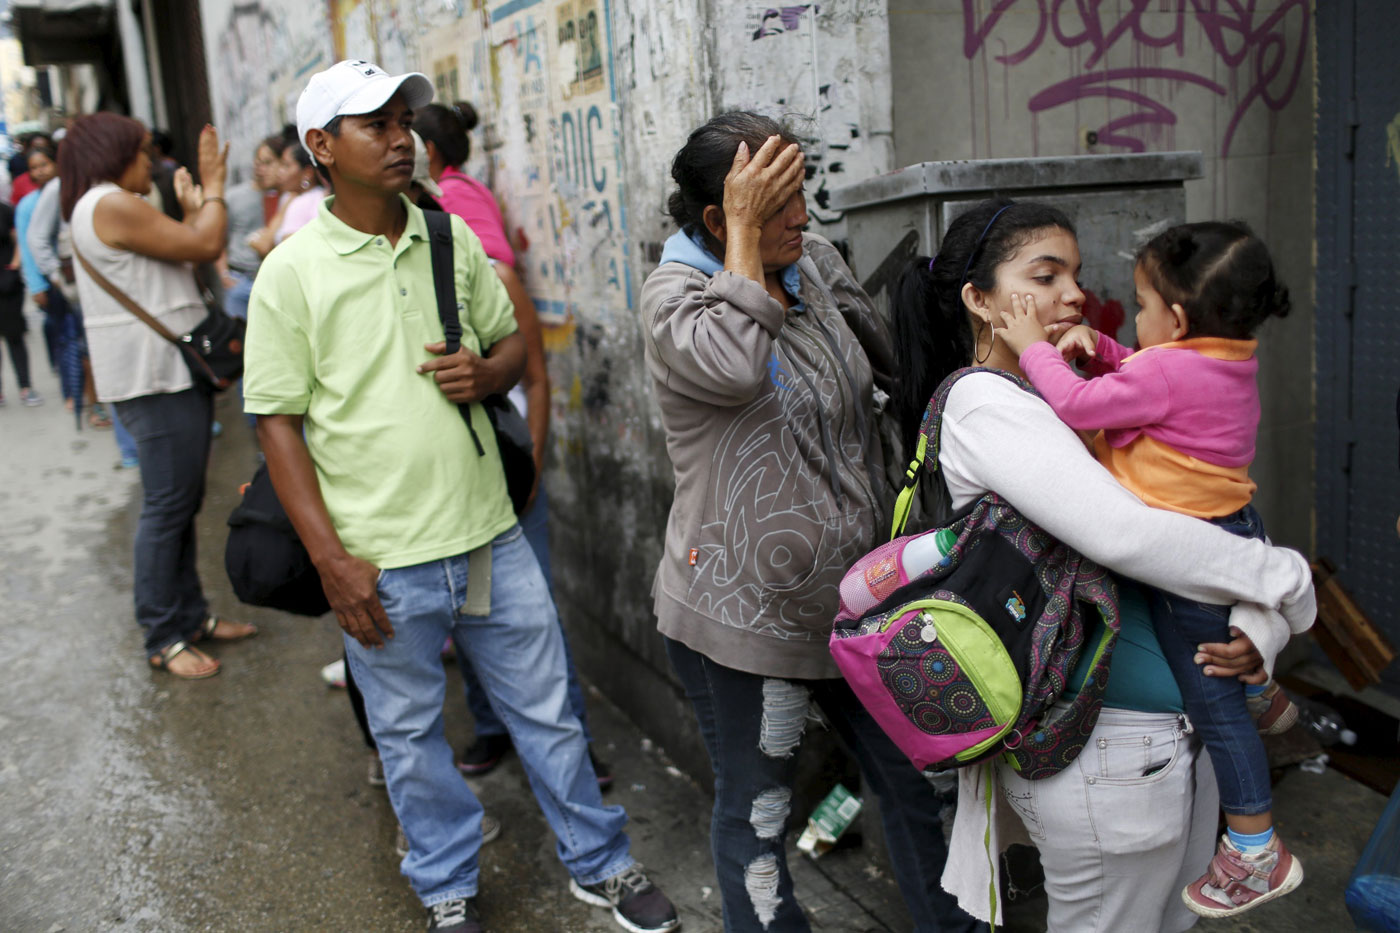 El 86,3% de los venezolanos compra menos comida que antes (encuesta Venebarómetro)